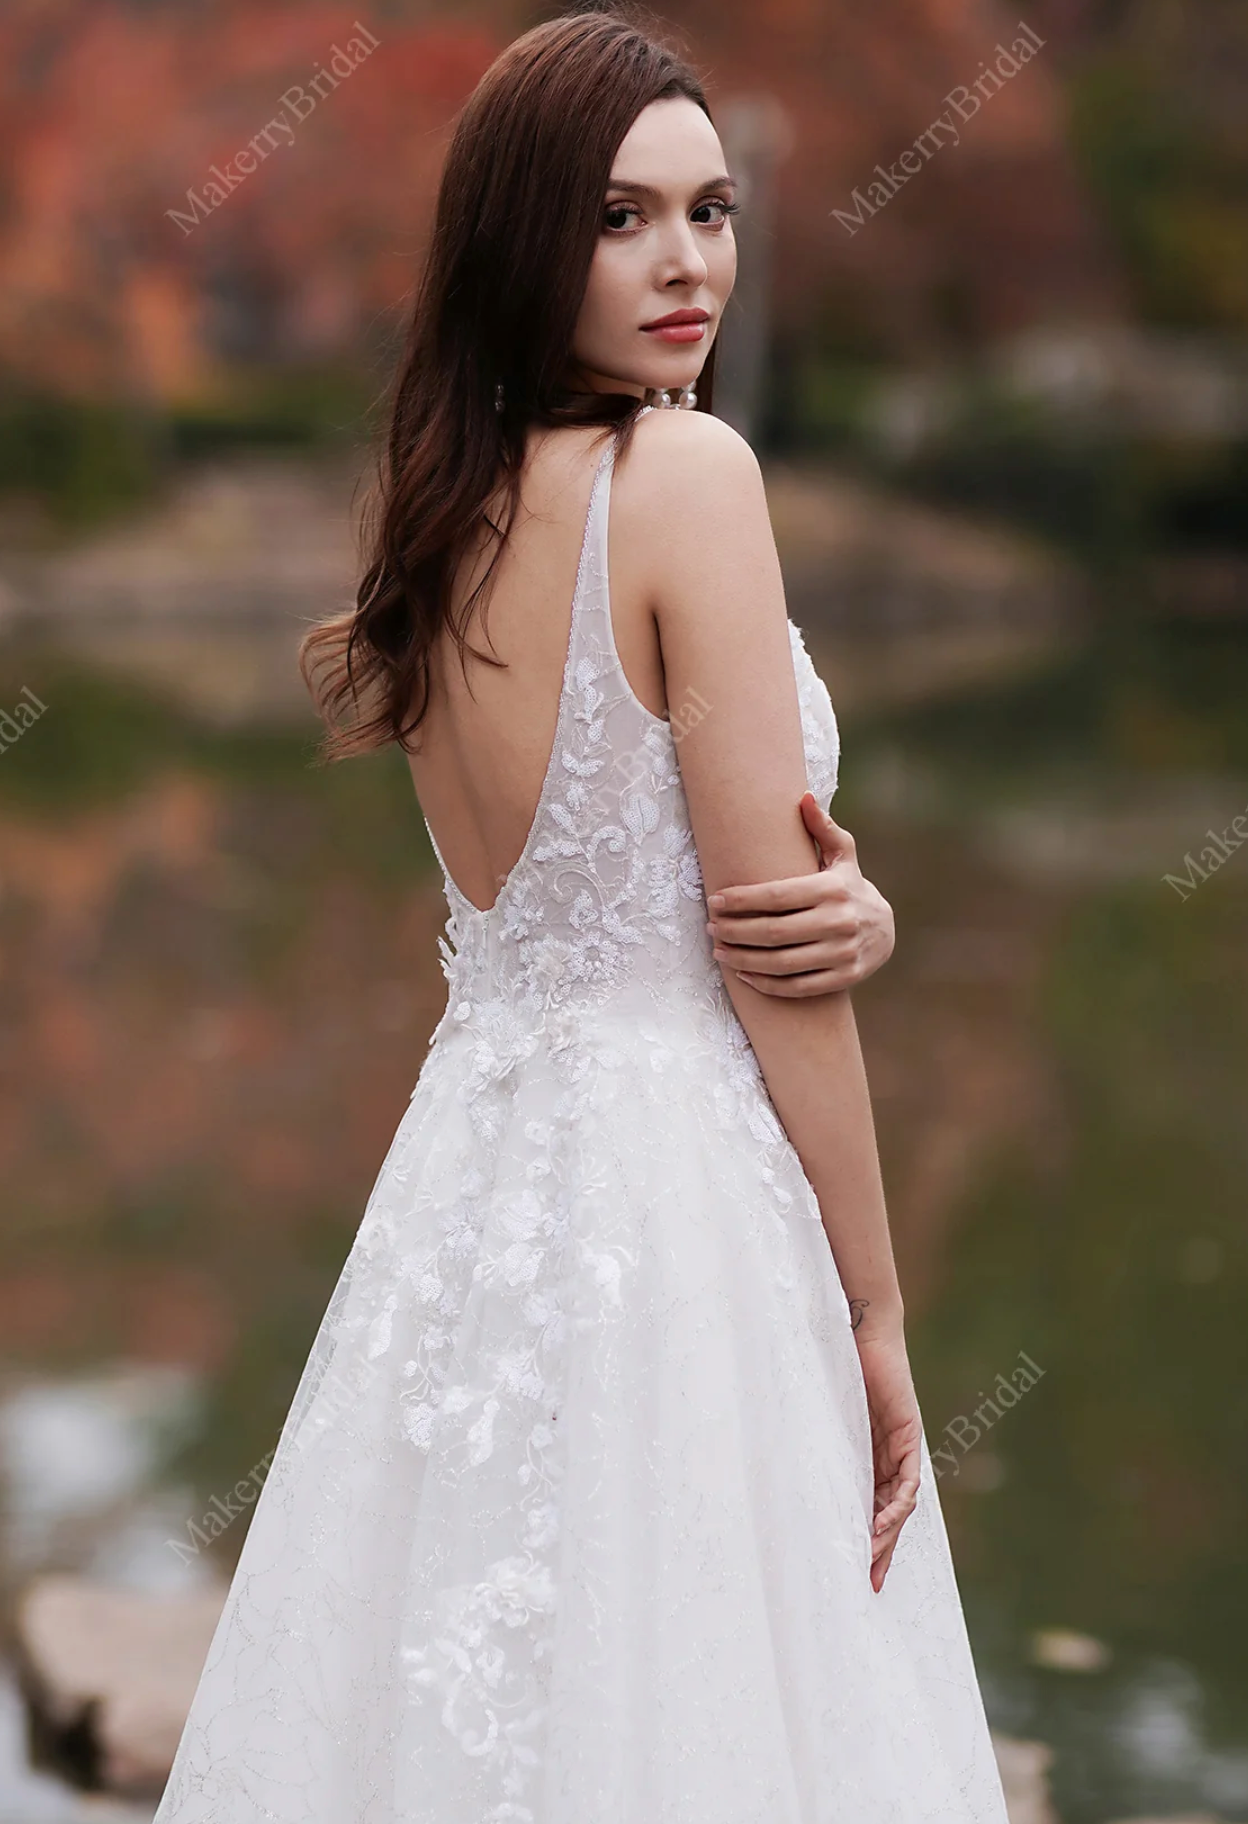 A Precious And Timeless Wedding Dress